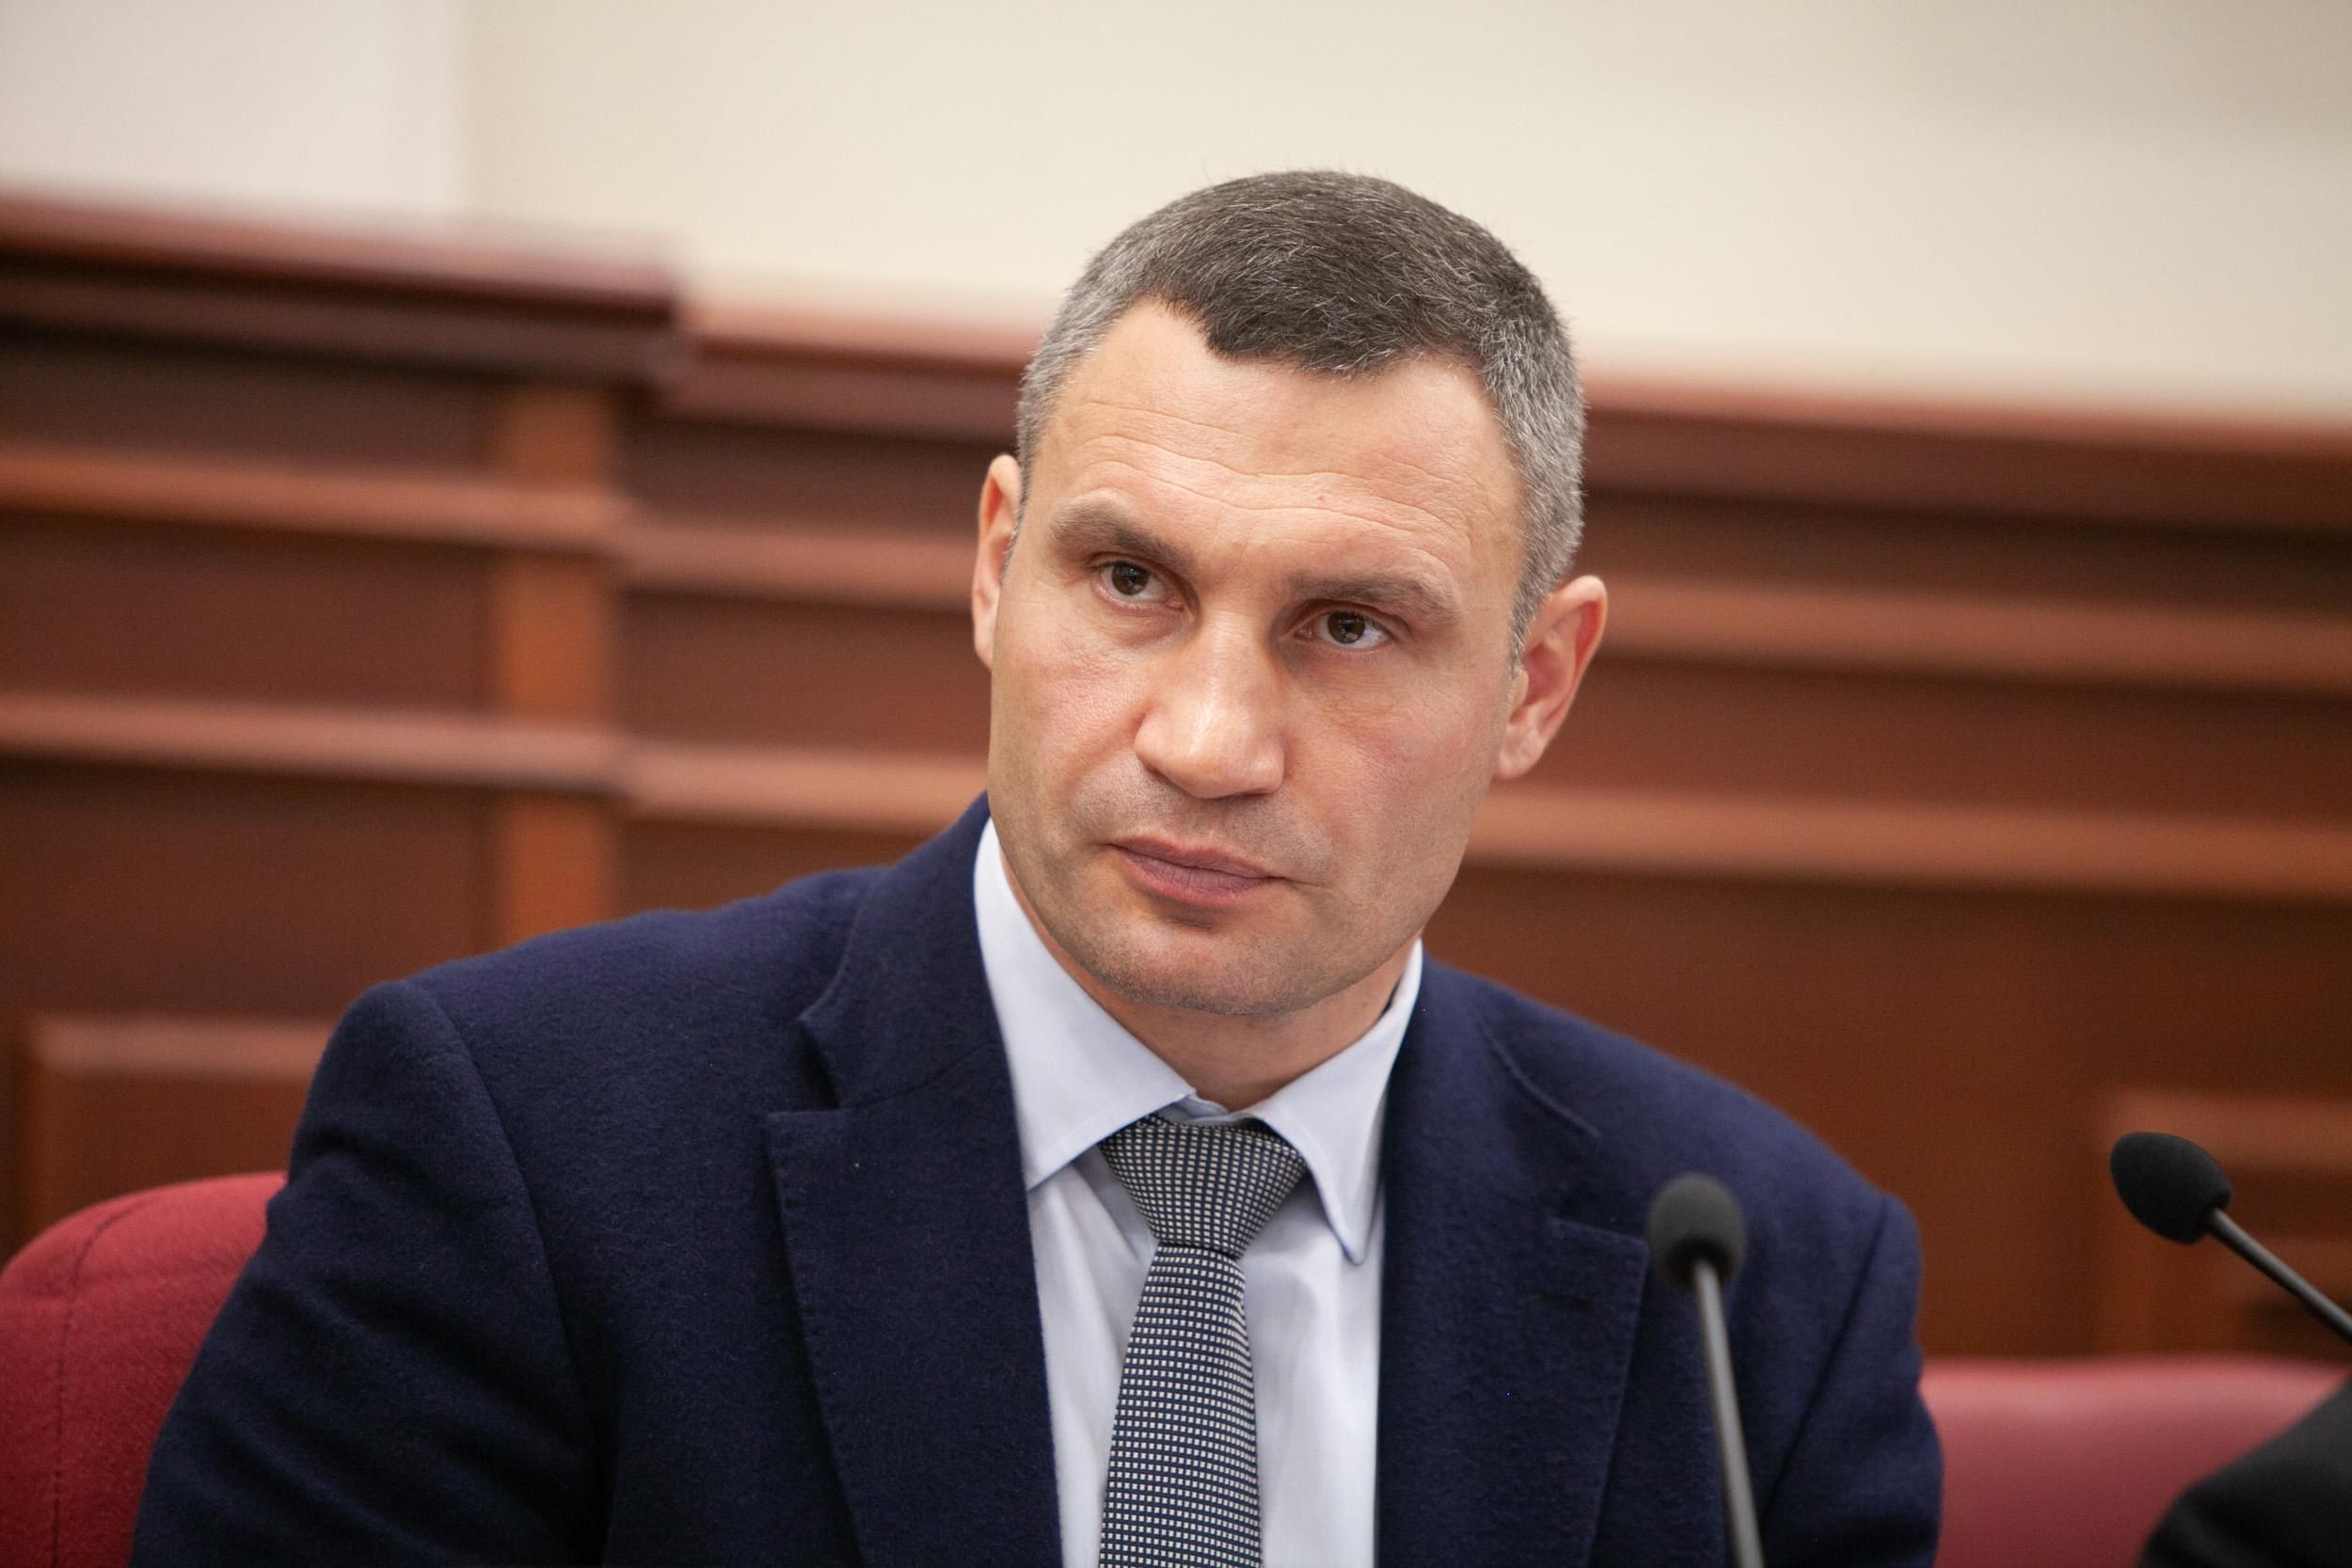 Кличко отчитал депутата от "Свободы" за политиканство и неконструктив, – блогер